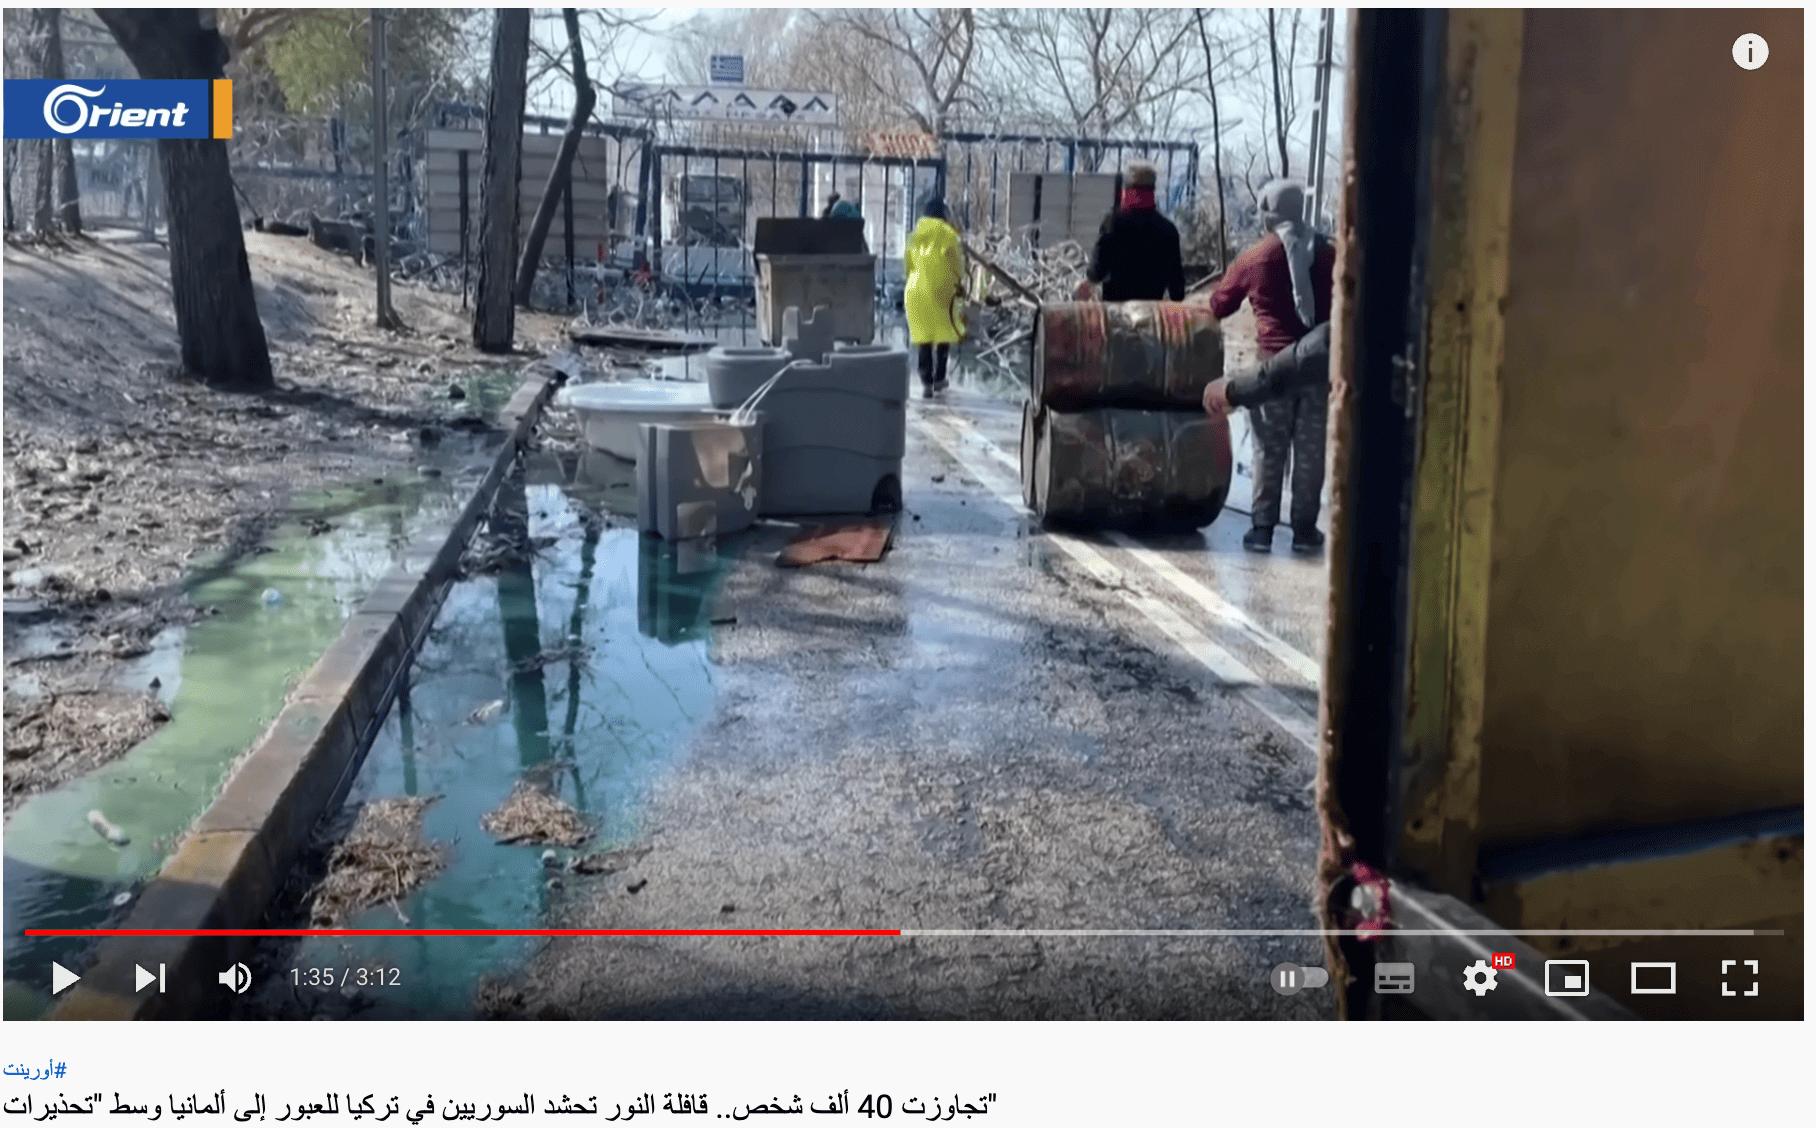 Bericht von Orient TV zeigt Menschen, die Gegenstände auf einen Zaun werfen